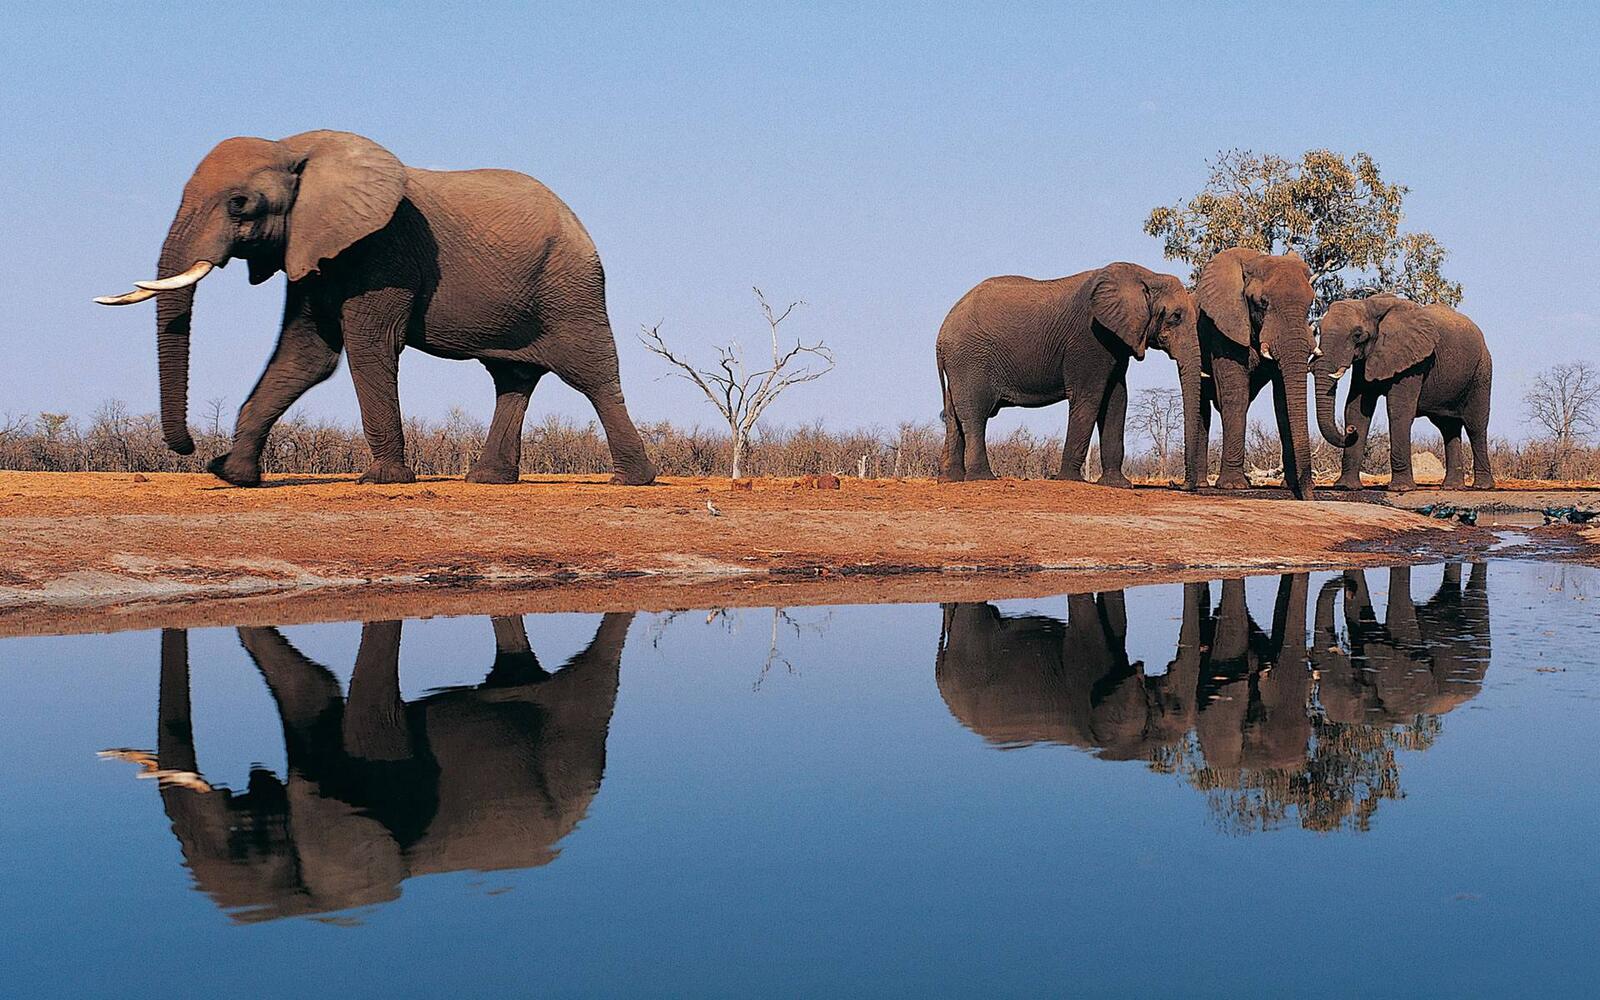 Wallpapers elephants ears trunks on the desktop